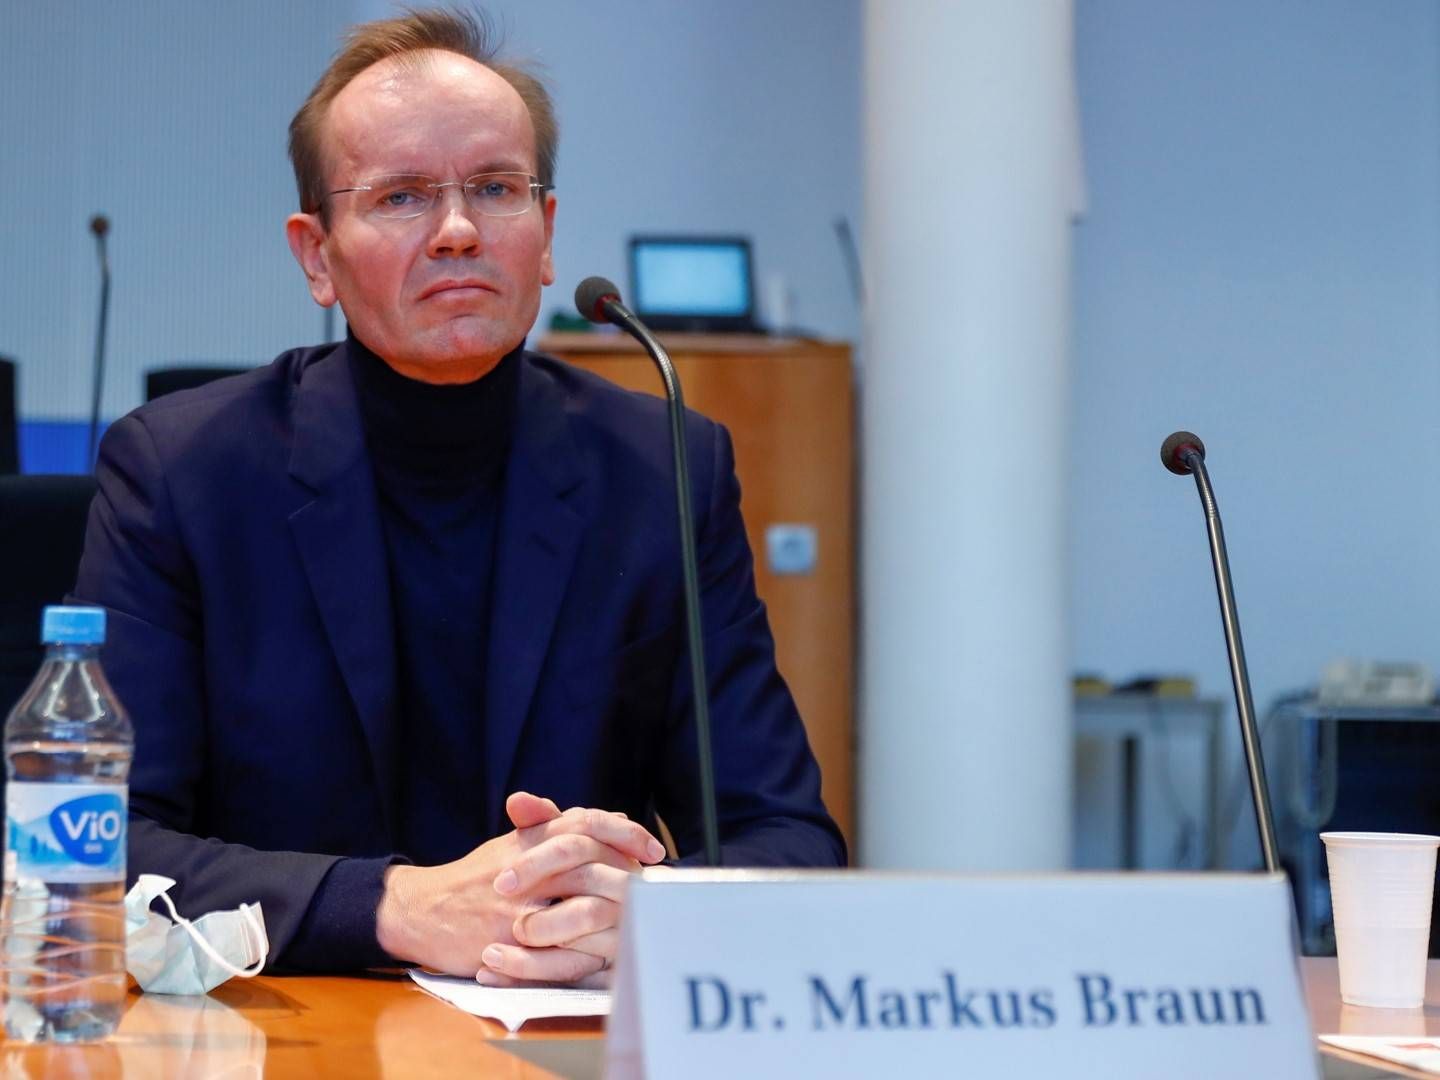 Markus Braun bei seiner Aussage vor dem Untersuchungsausschuss des Bundestages. | Foto: picture alliance/Fabrizio Bensch/Reuters Images Europe/Pool/dpa